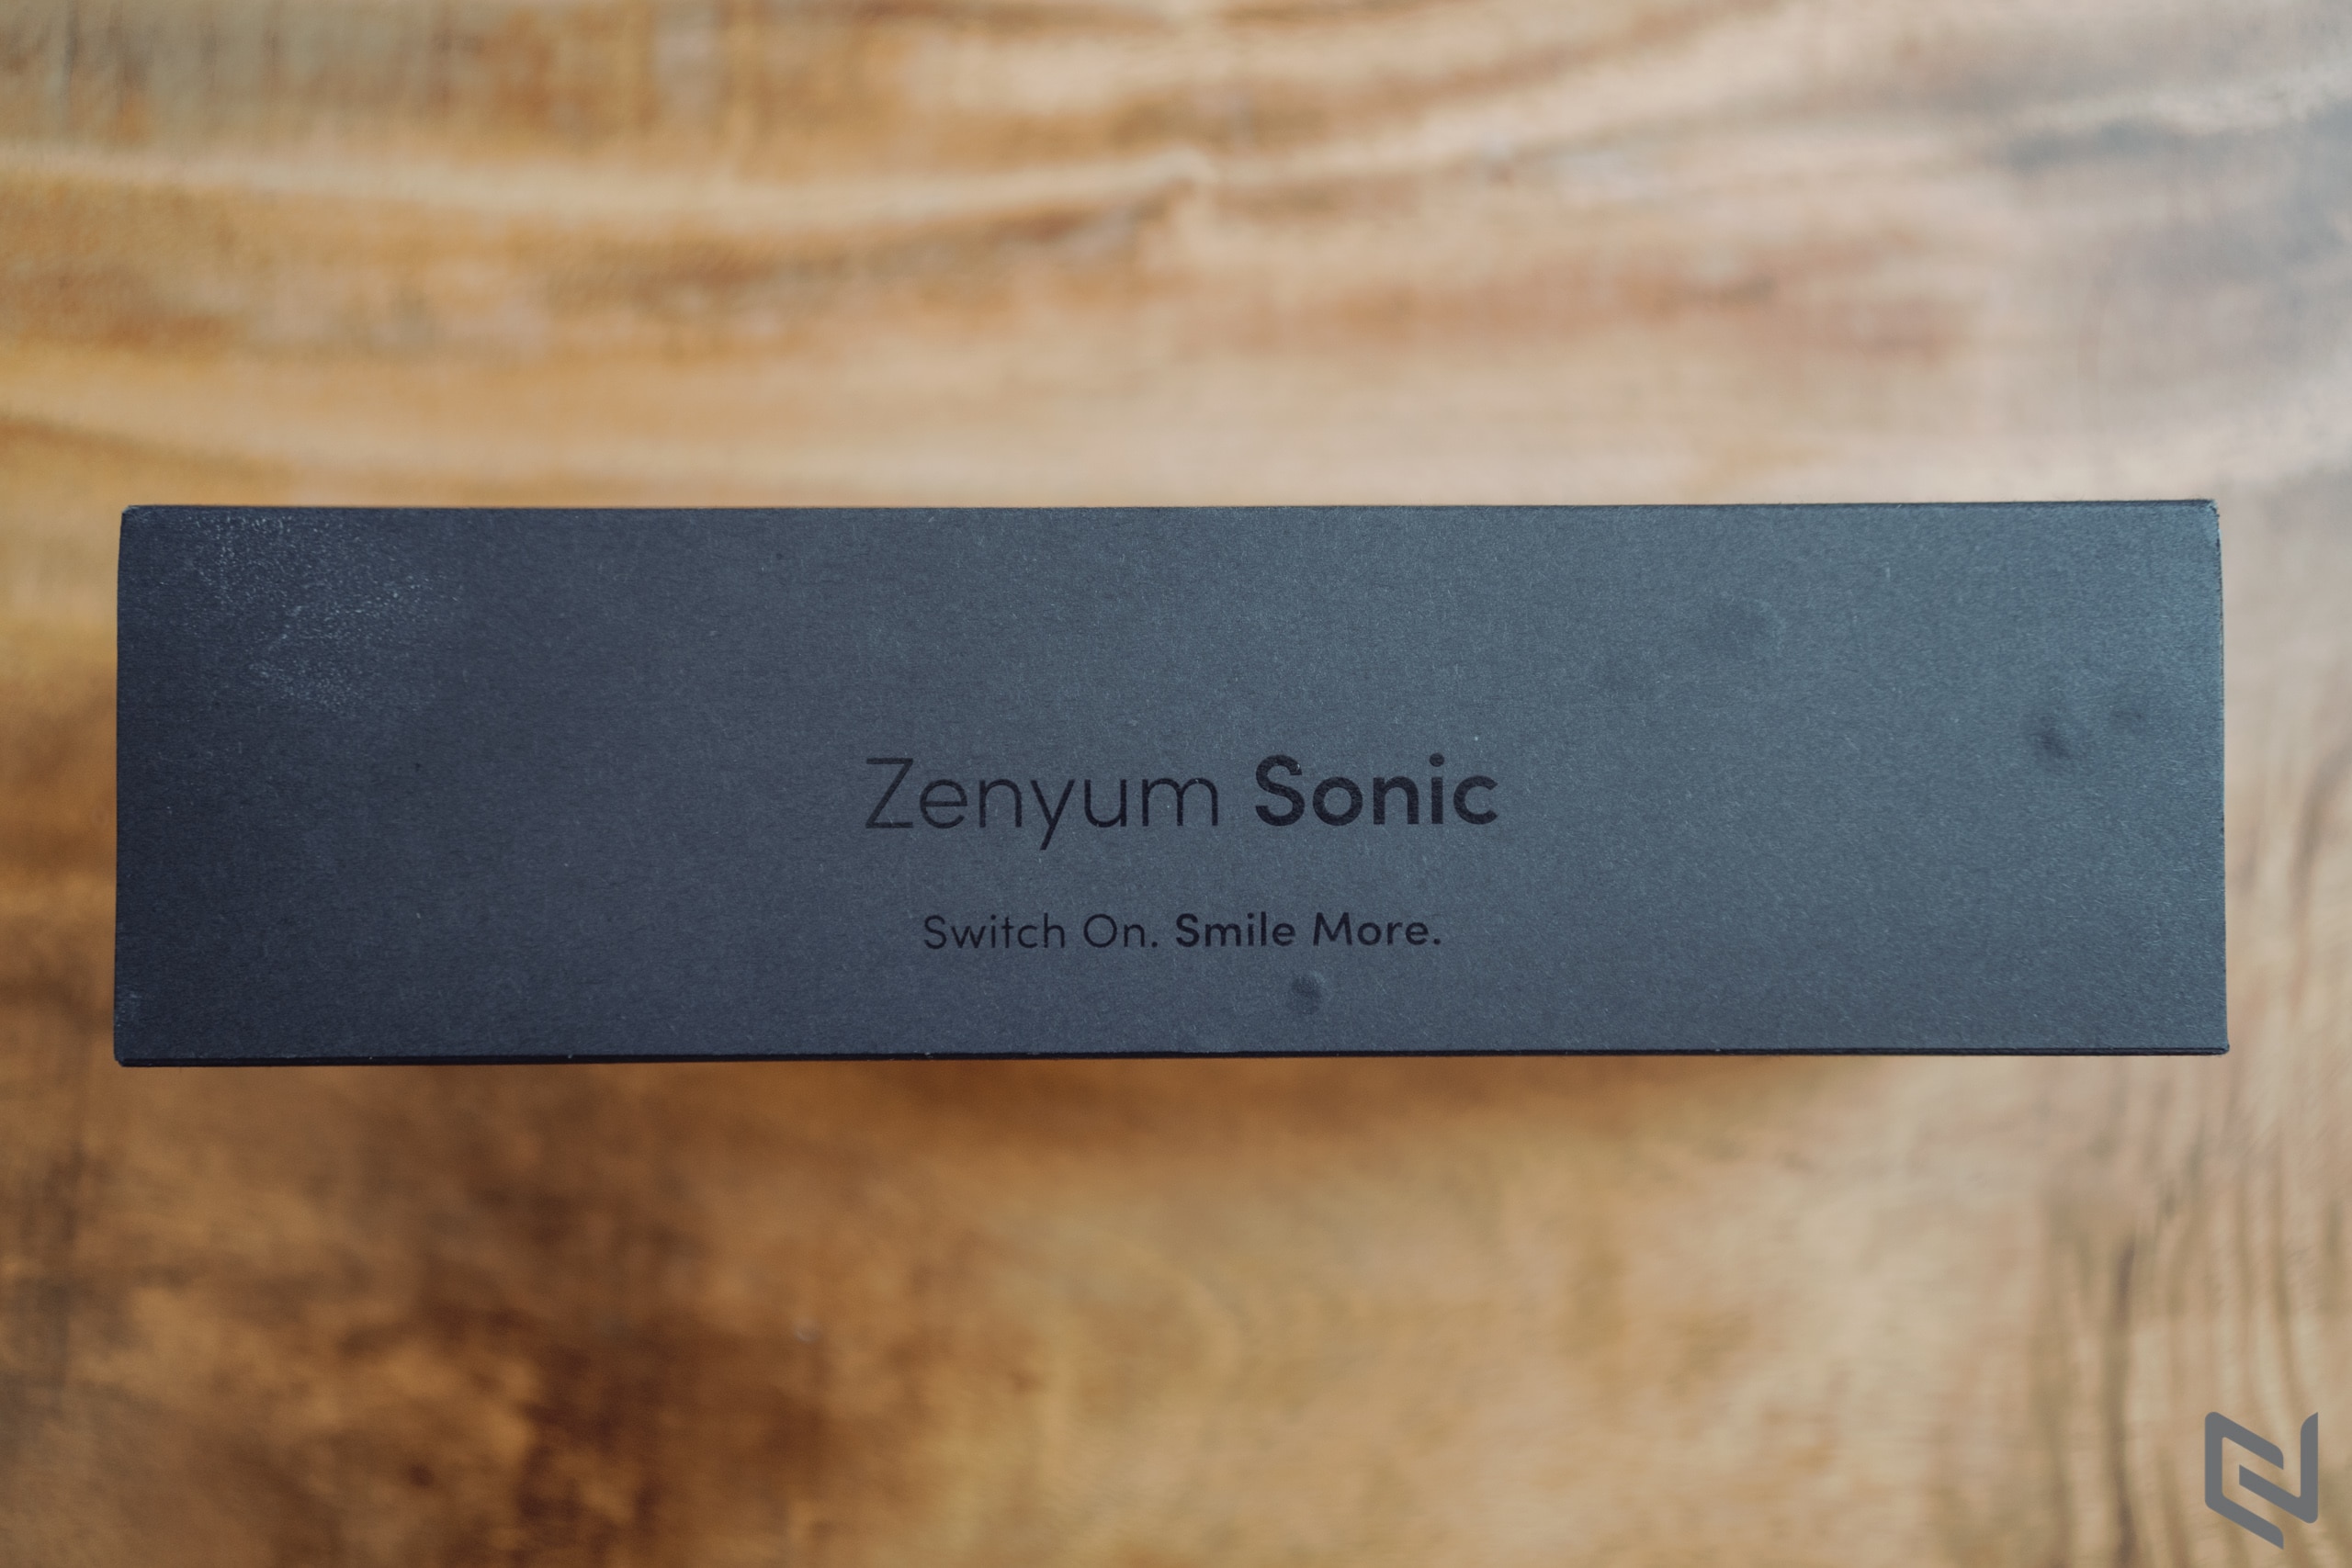 Trên tay bàn chải điện Zenyum Sonic: Tần số rung 33,000 lần/phút, 3 chế độ chải, pin 3 tuần